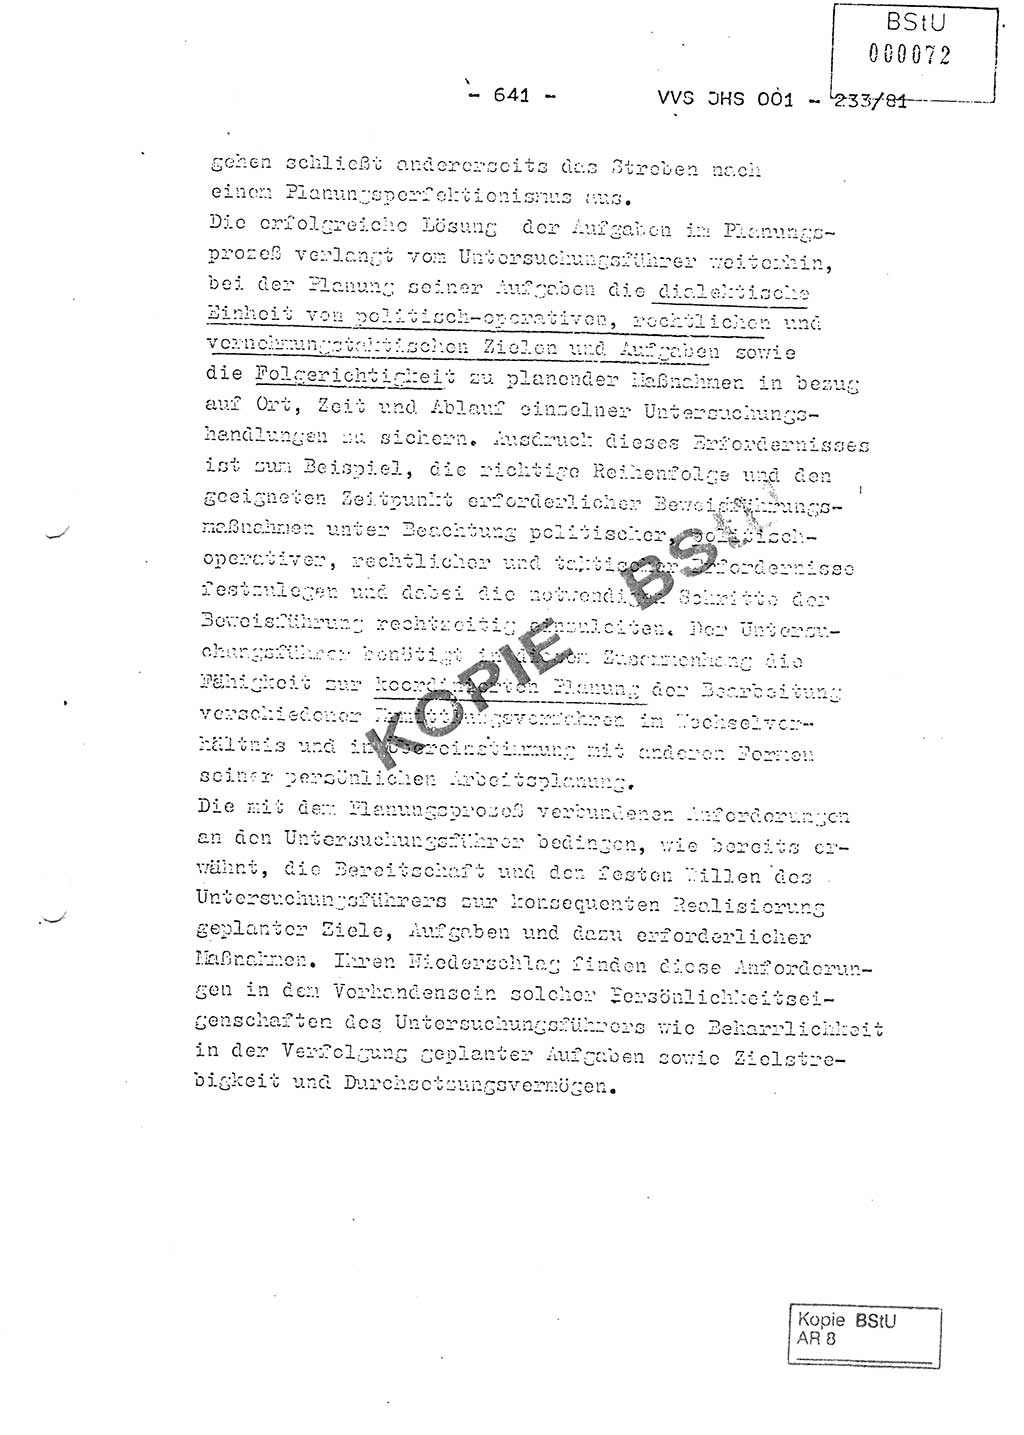 Dissertation Oberstleutnant Horst Zank (JHS), Oberstleutnant Dr. Karl-Heinz Knoblauch (JHS), Oberstleutnant Gustav-Adolf Kowalewski (HA Ⅸ), Oberstleutnant Wolfgang Plötner (HA Ⅸ), Ministerium für Staatssicherheit (MfS) [Deutsche Demokratische Republik (DDR)], Juristische Hochschule (JHS), Vertrauliche Verschlußsache (VVS) o001-233/81, Potsdam 1981, Blatt 641 (Diss. MfS DDR JHS VVS o001-233/81 1981, Bl. 641)